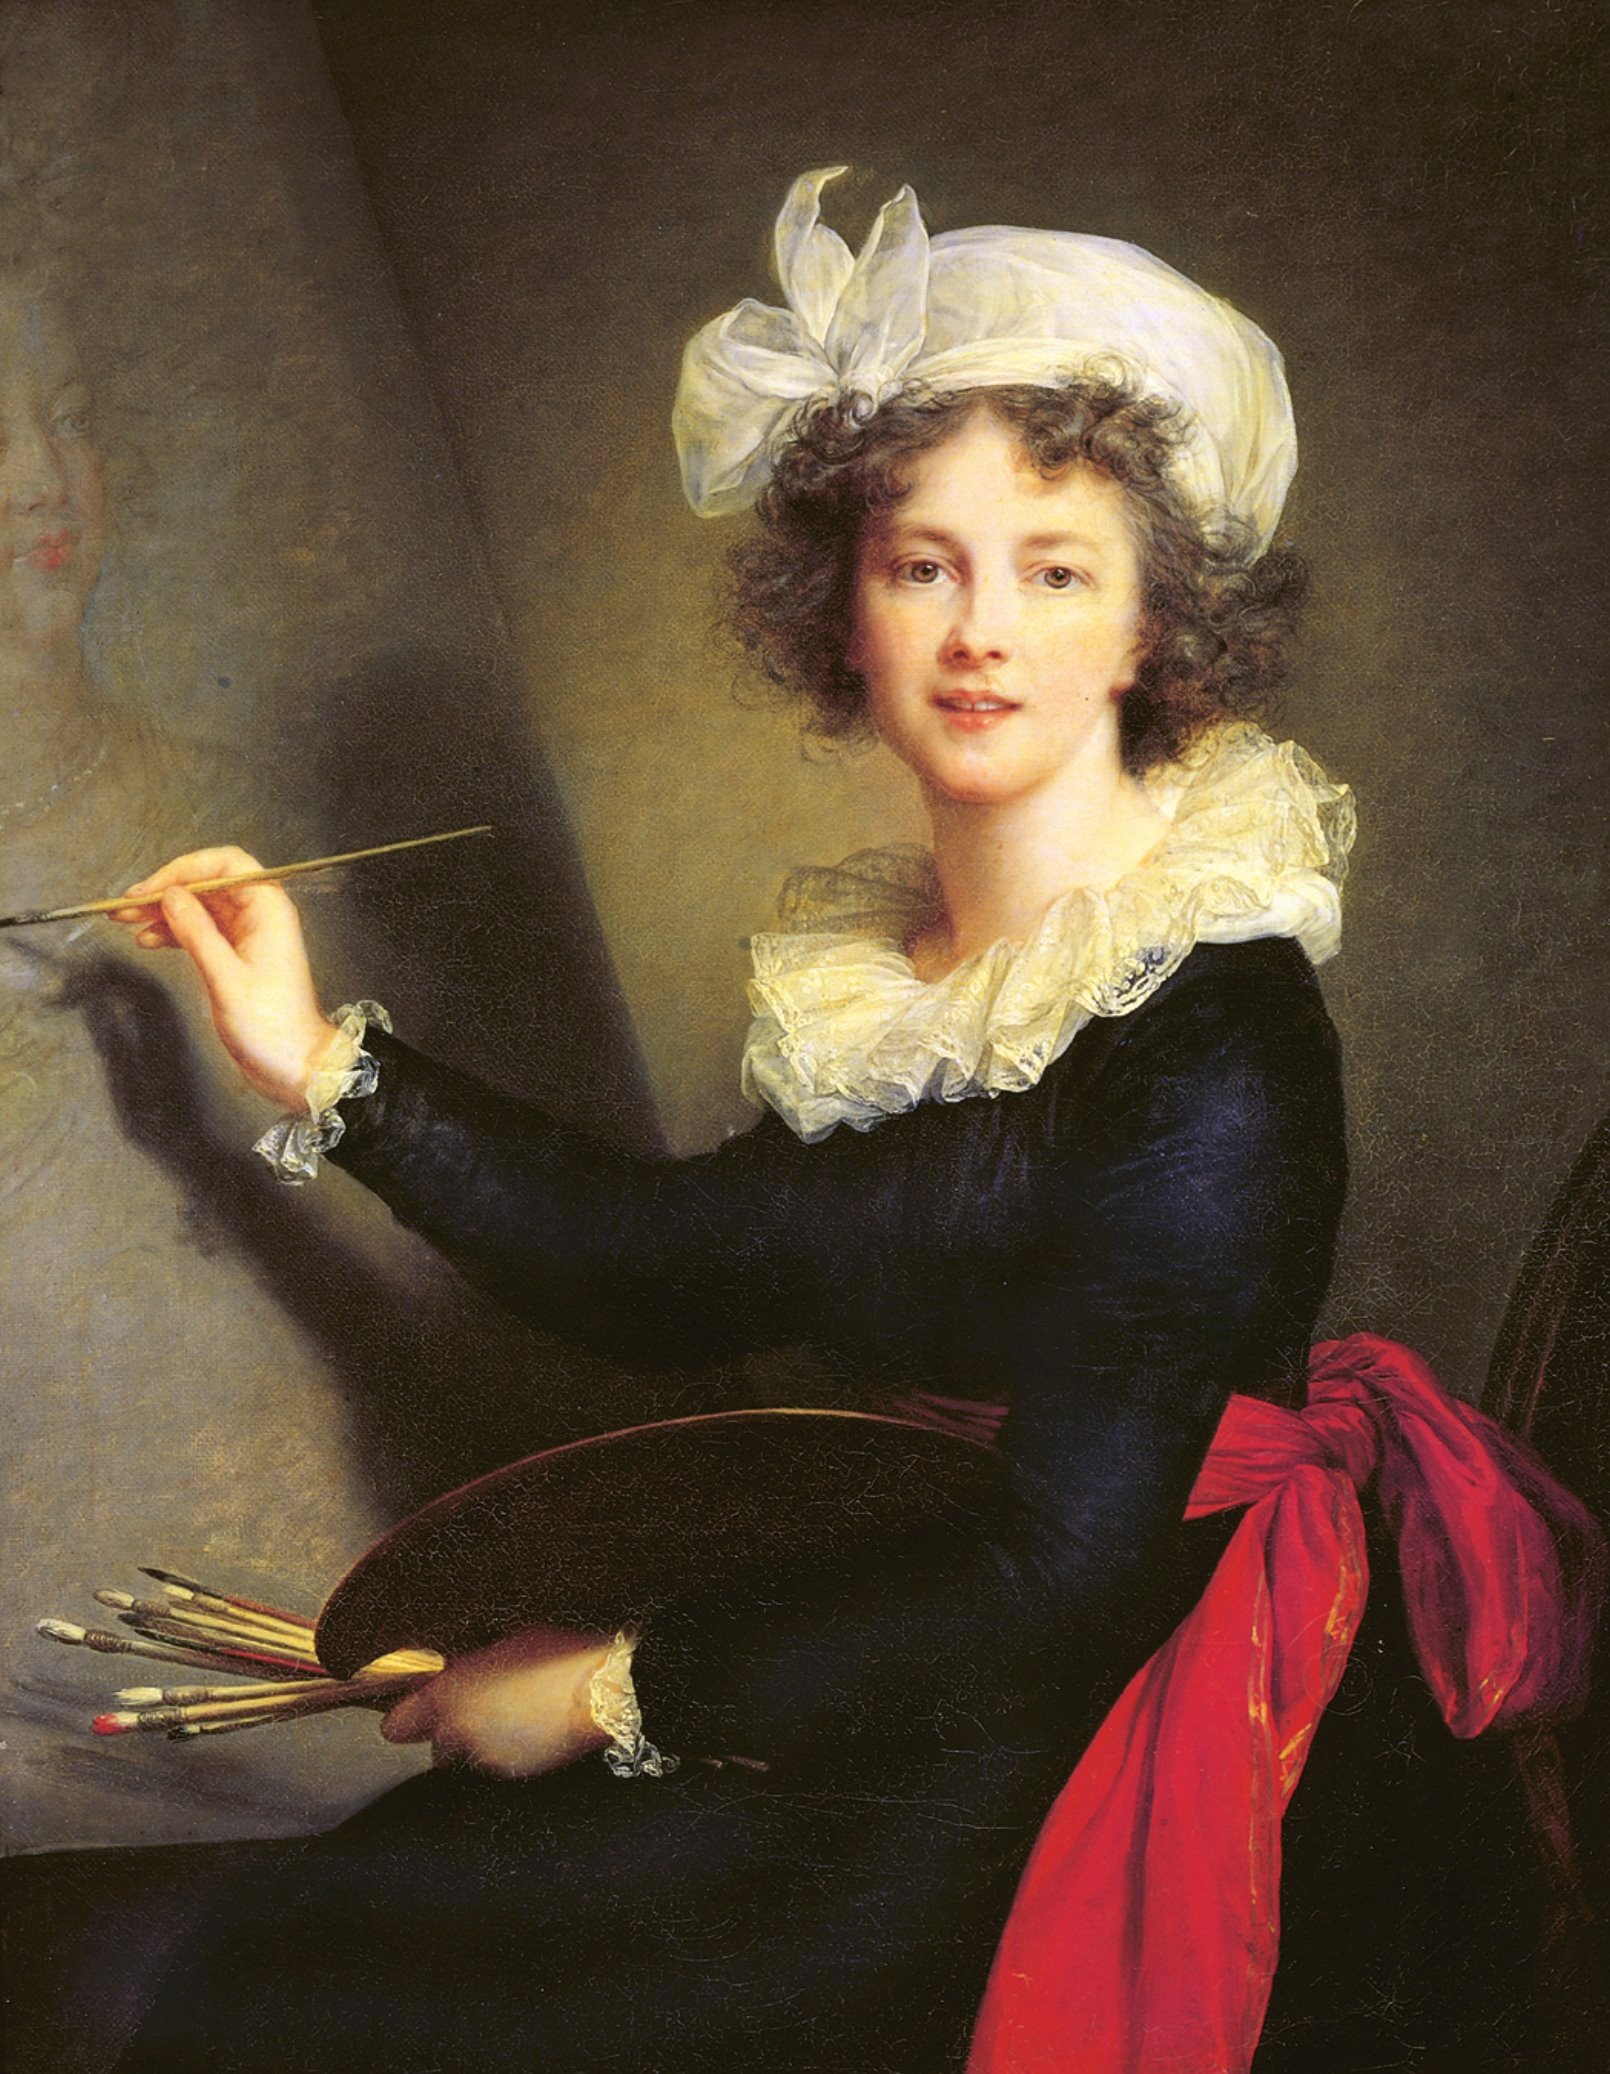 Élisabeth Vigee Le Brun - April 16, 1755 - March 30, 1842